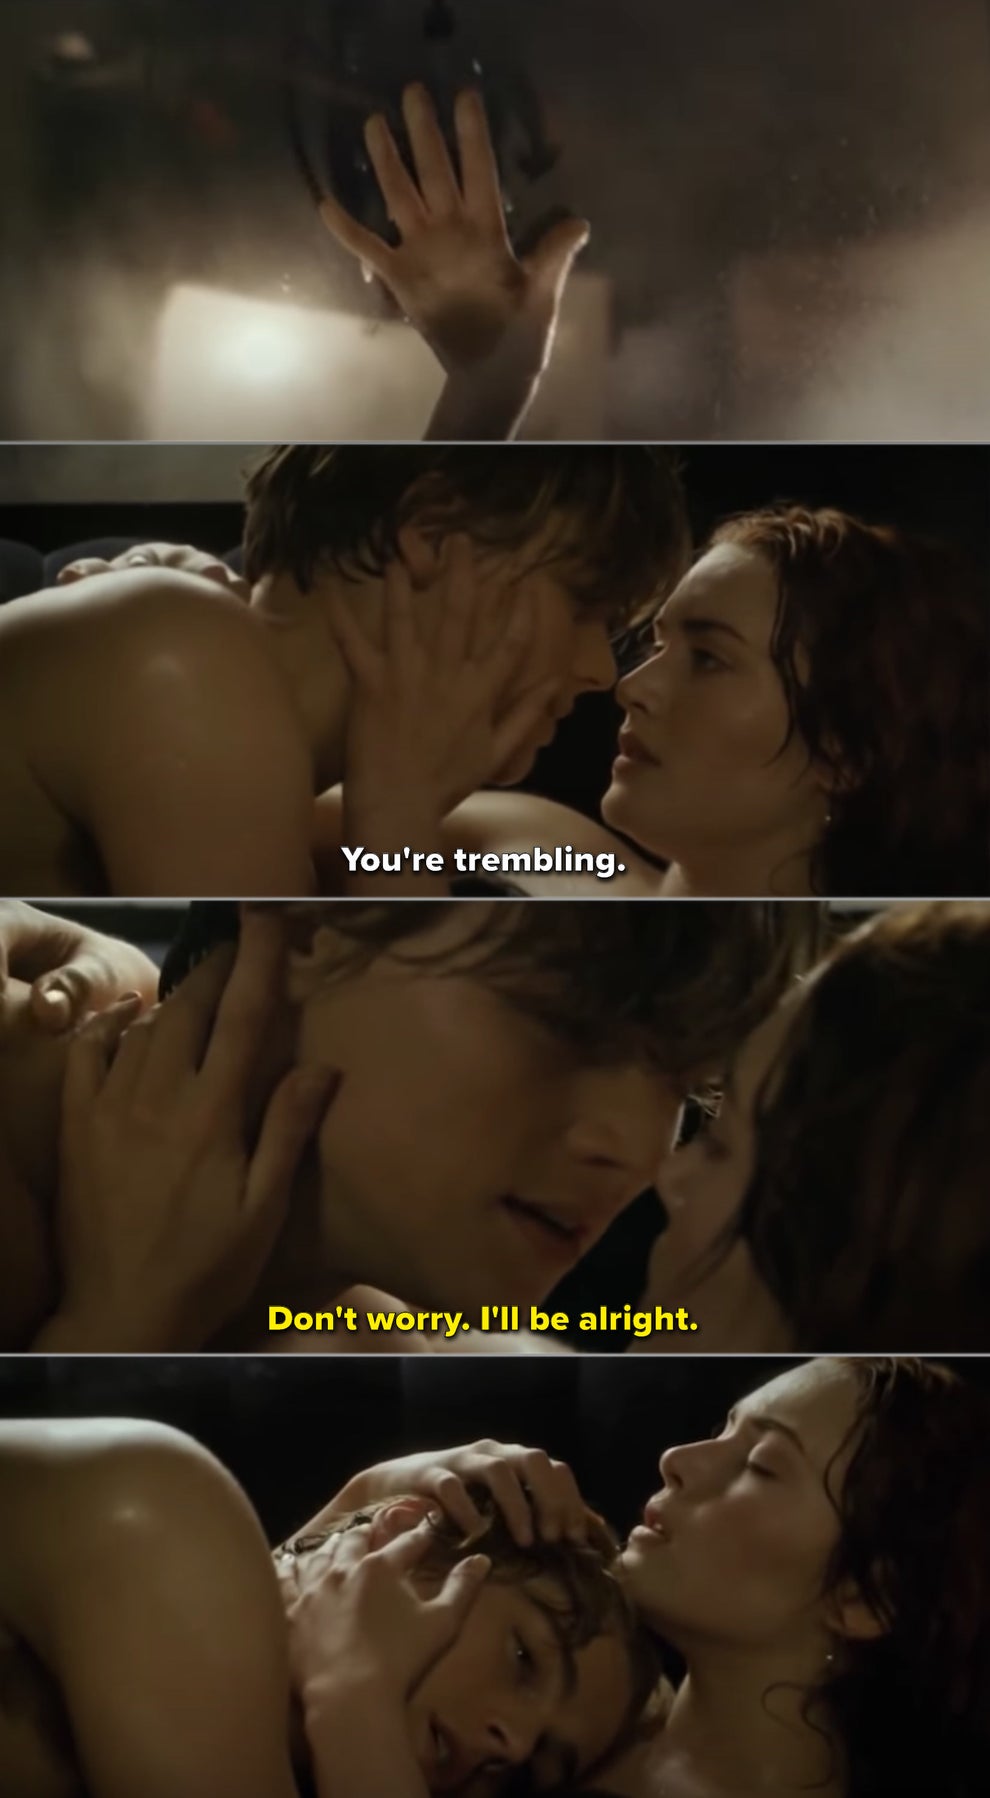 Best erotic scene